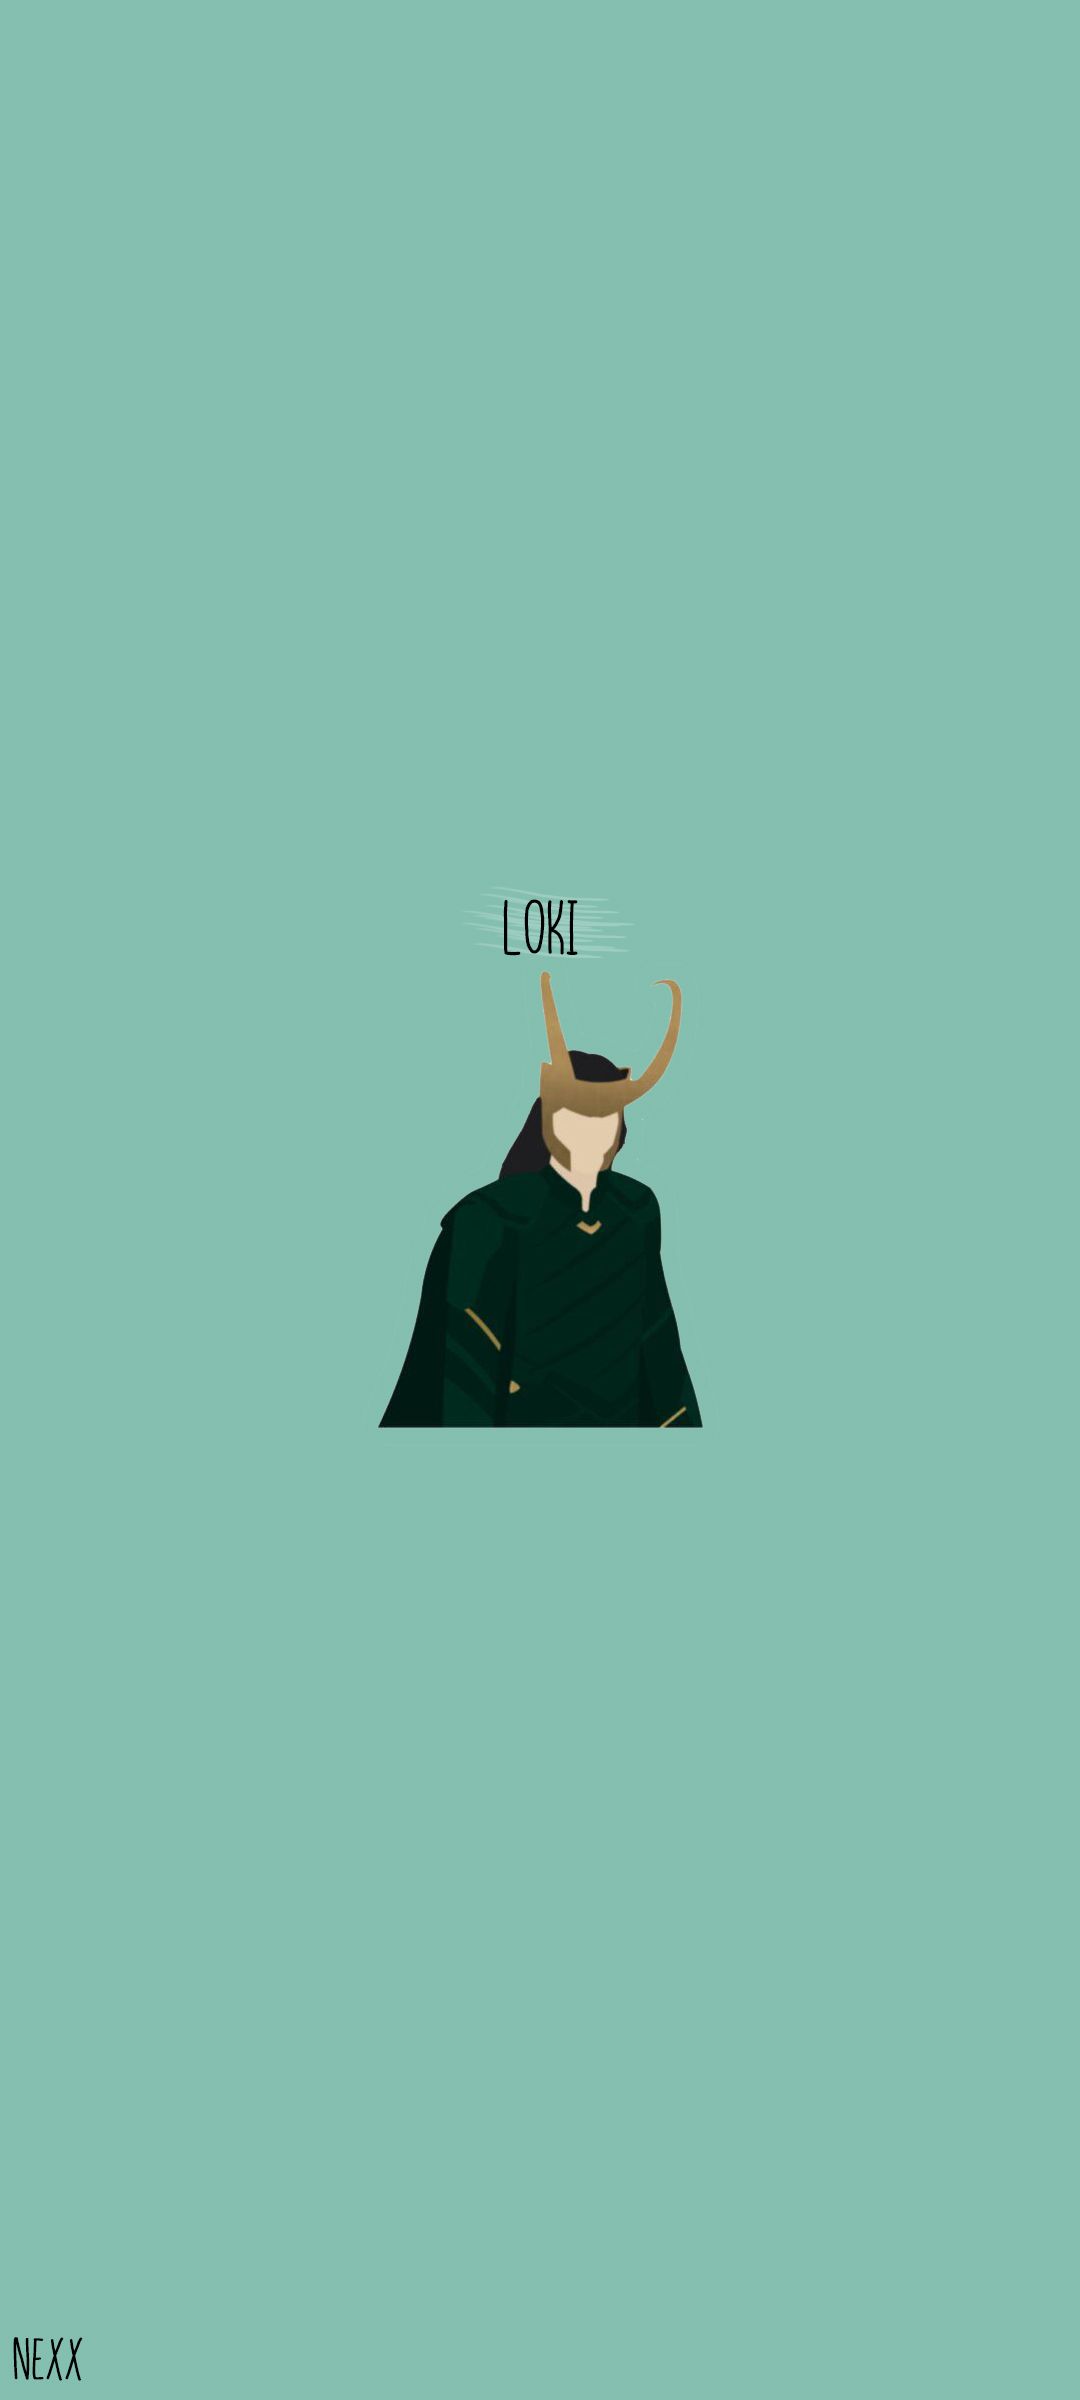 Minimalist Loki Wallpapers